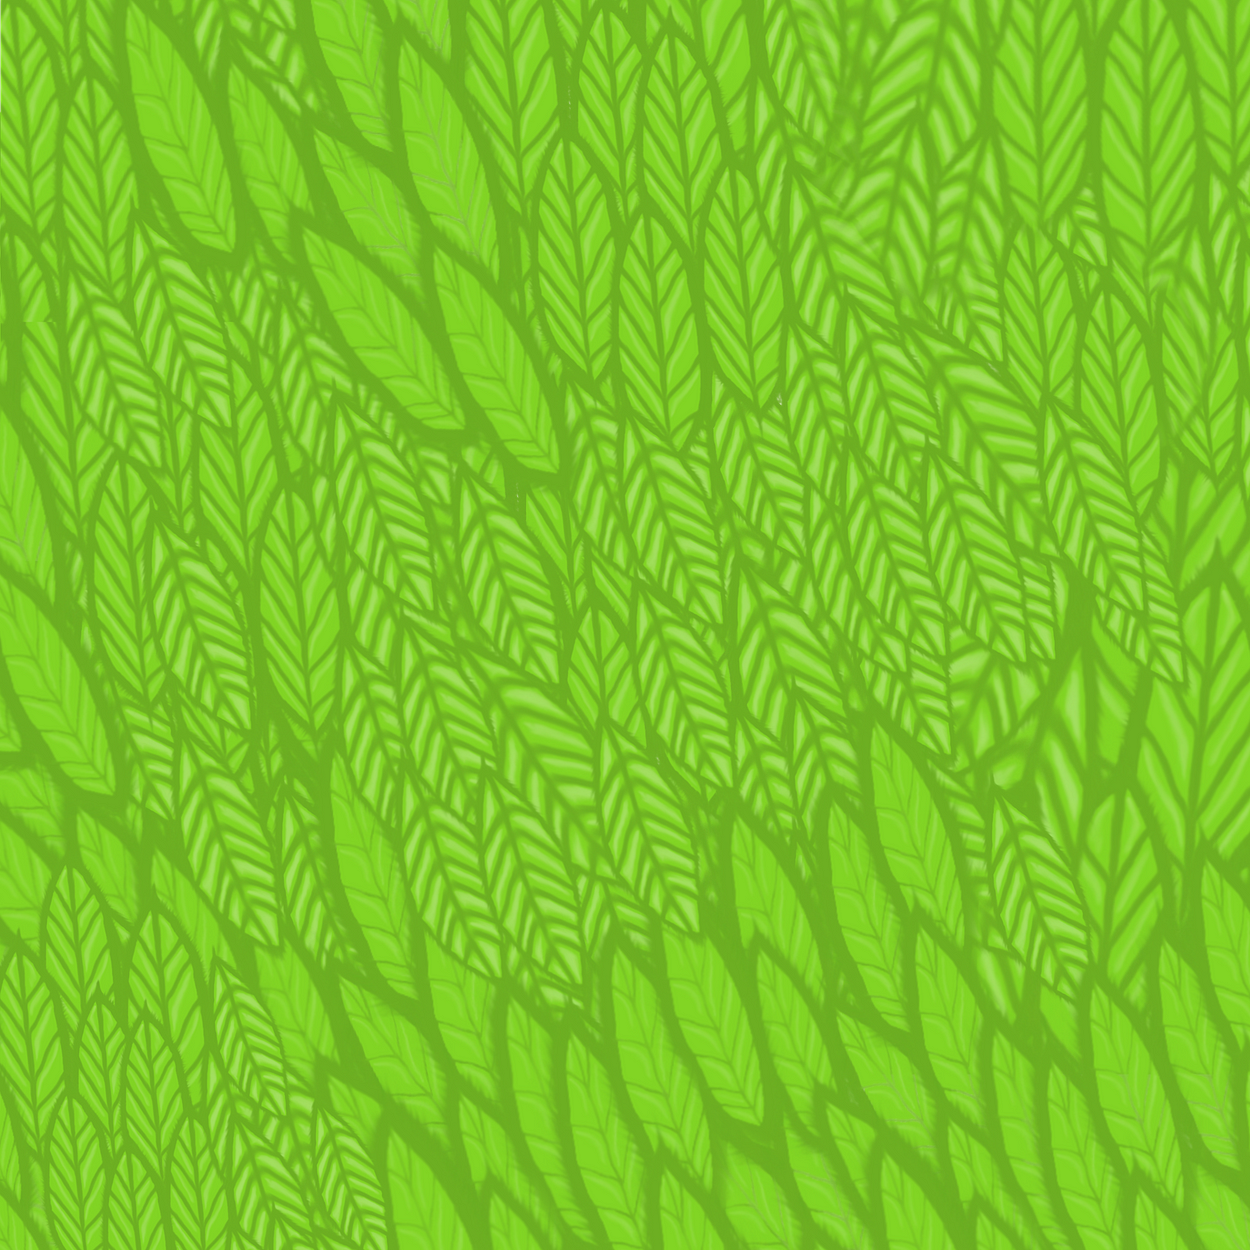 Tree leaves texture Design